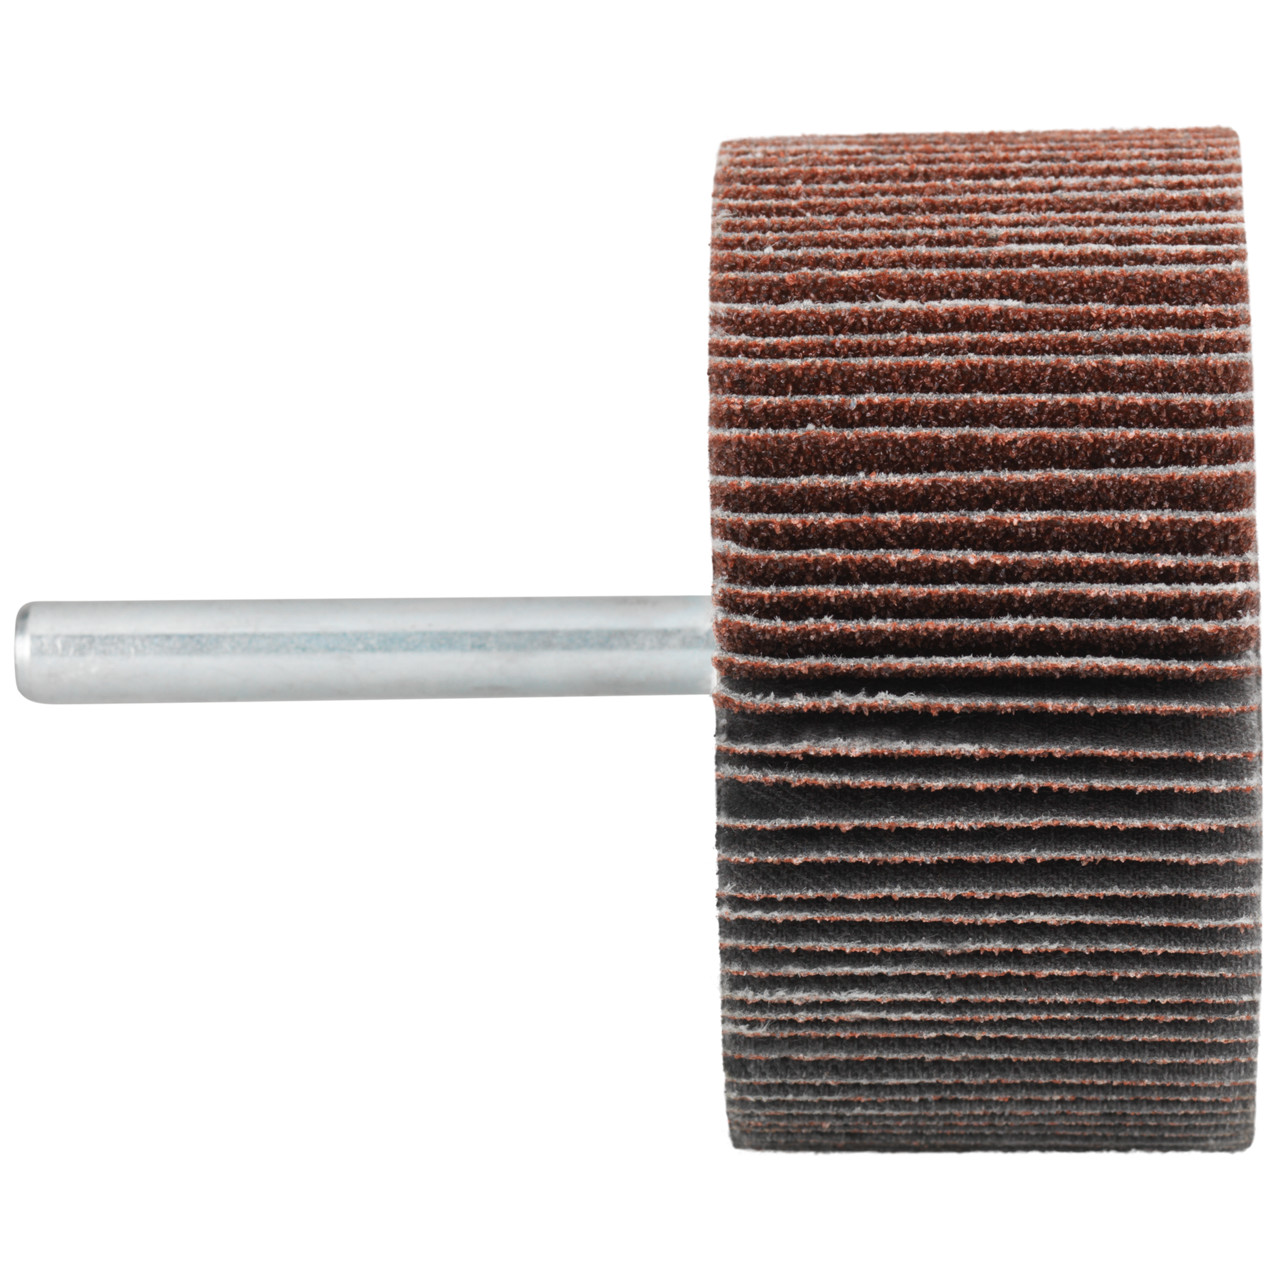 Tyrolit A-P01 C X Pennen DxD 60x15 Voor staal, roestvast staal en non-ferrometalen, P60, vorm: 52LA, Art. 816949